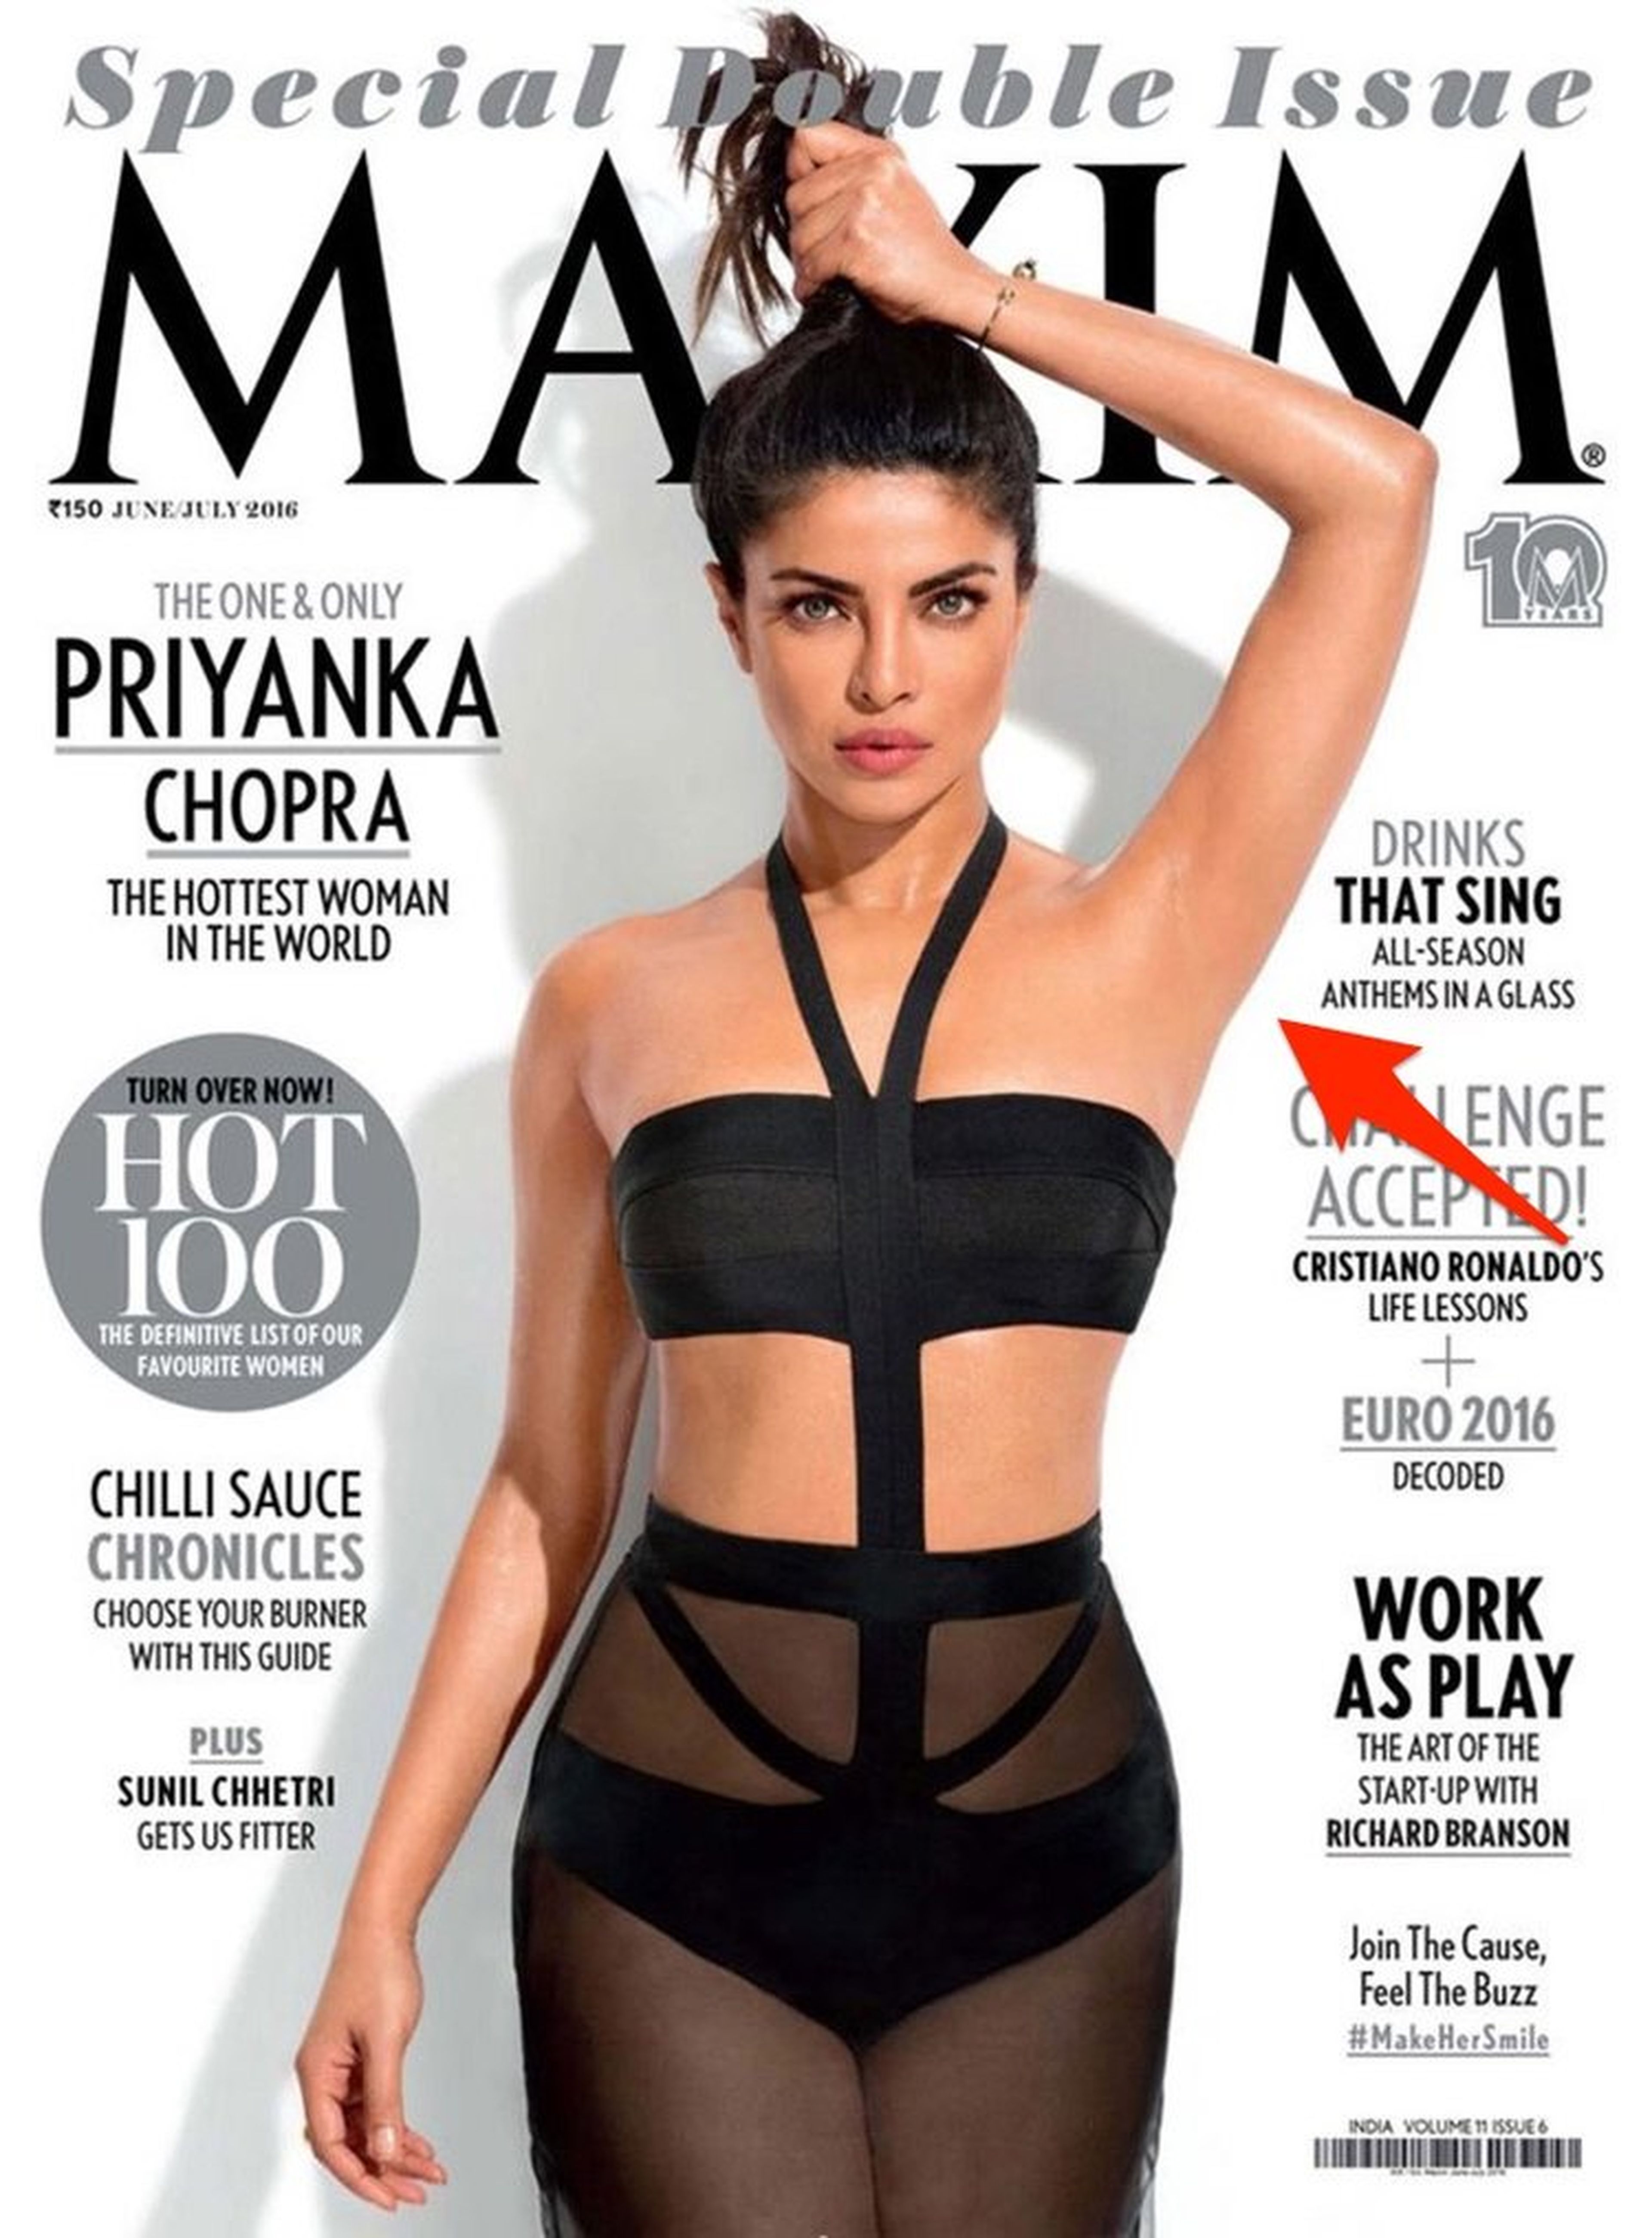 La axila de Priyanka Chopra fue sacada de Photoshop en su portada de Maxim 2016.